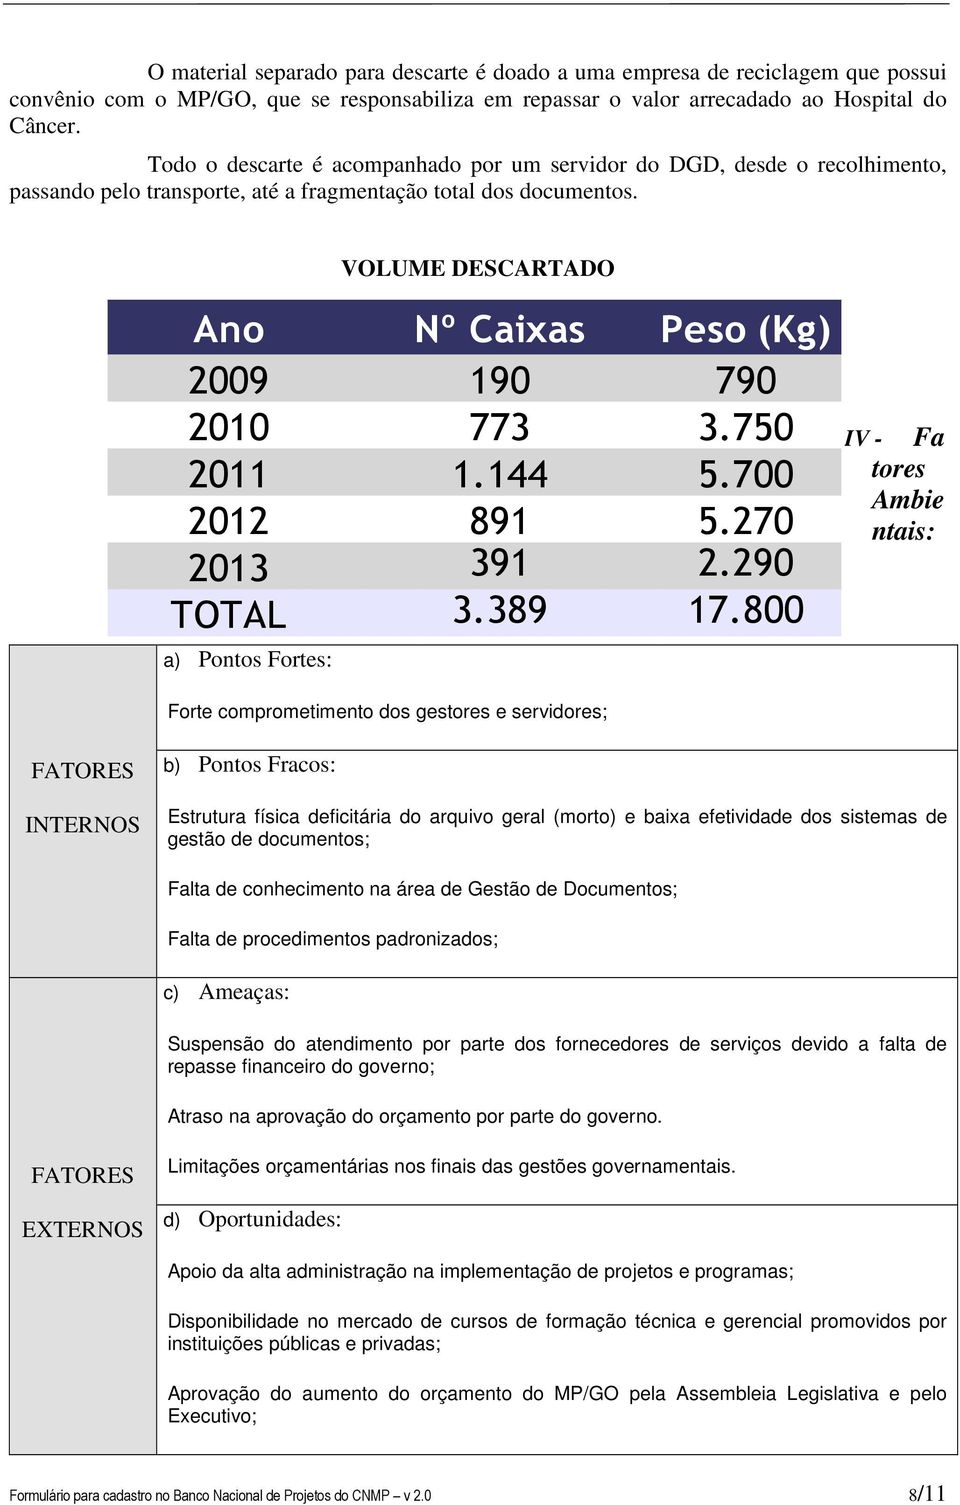 VOLUME DESCARTADO Ano Nº Caixas Peso (Kg) 2009 190 790 2010 773 3.750 2011 1.144 5.700 2012 891 5.270 2013 391 2.290 TOTAL 3.389 17.